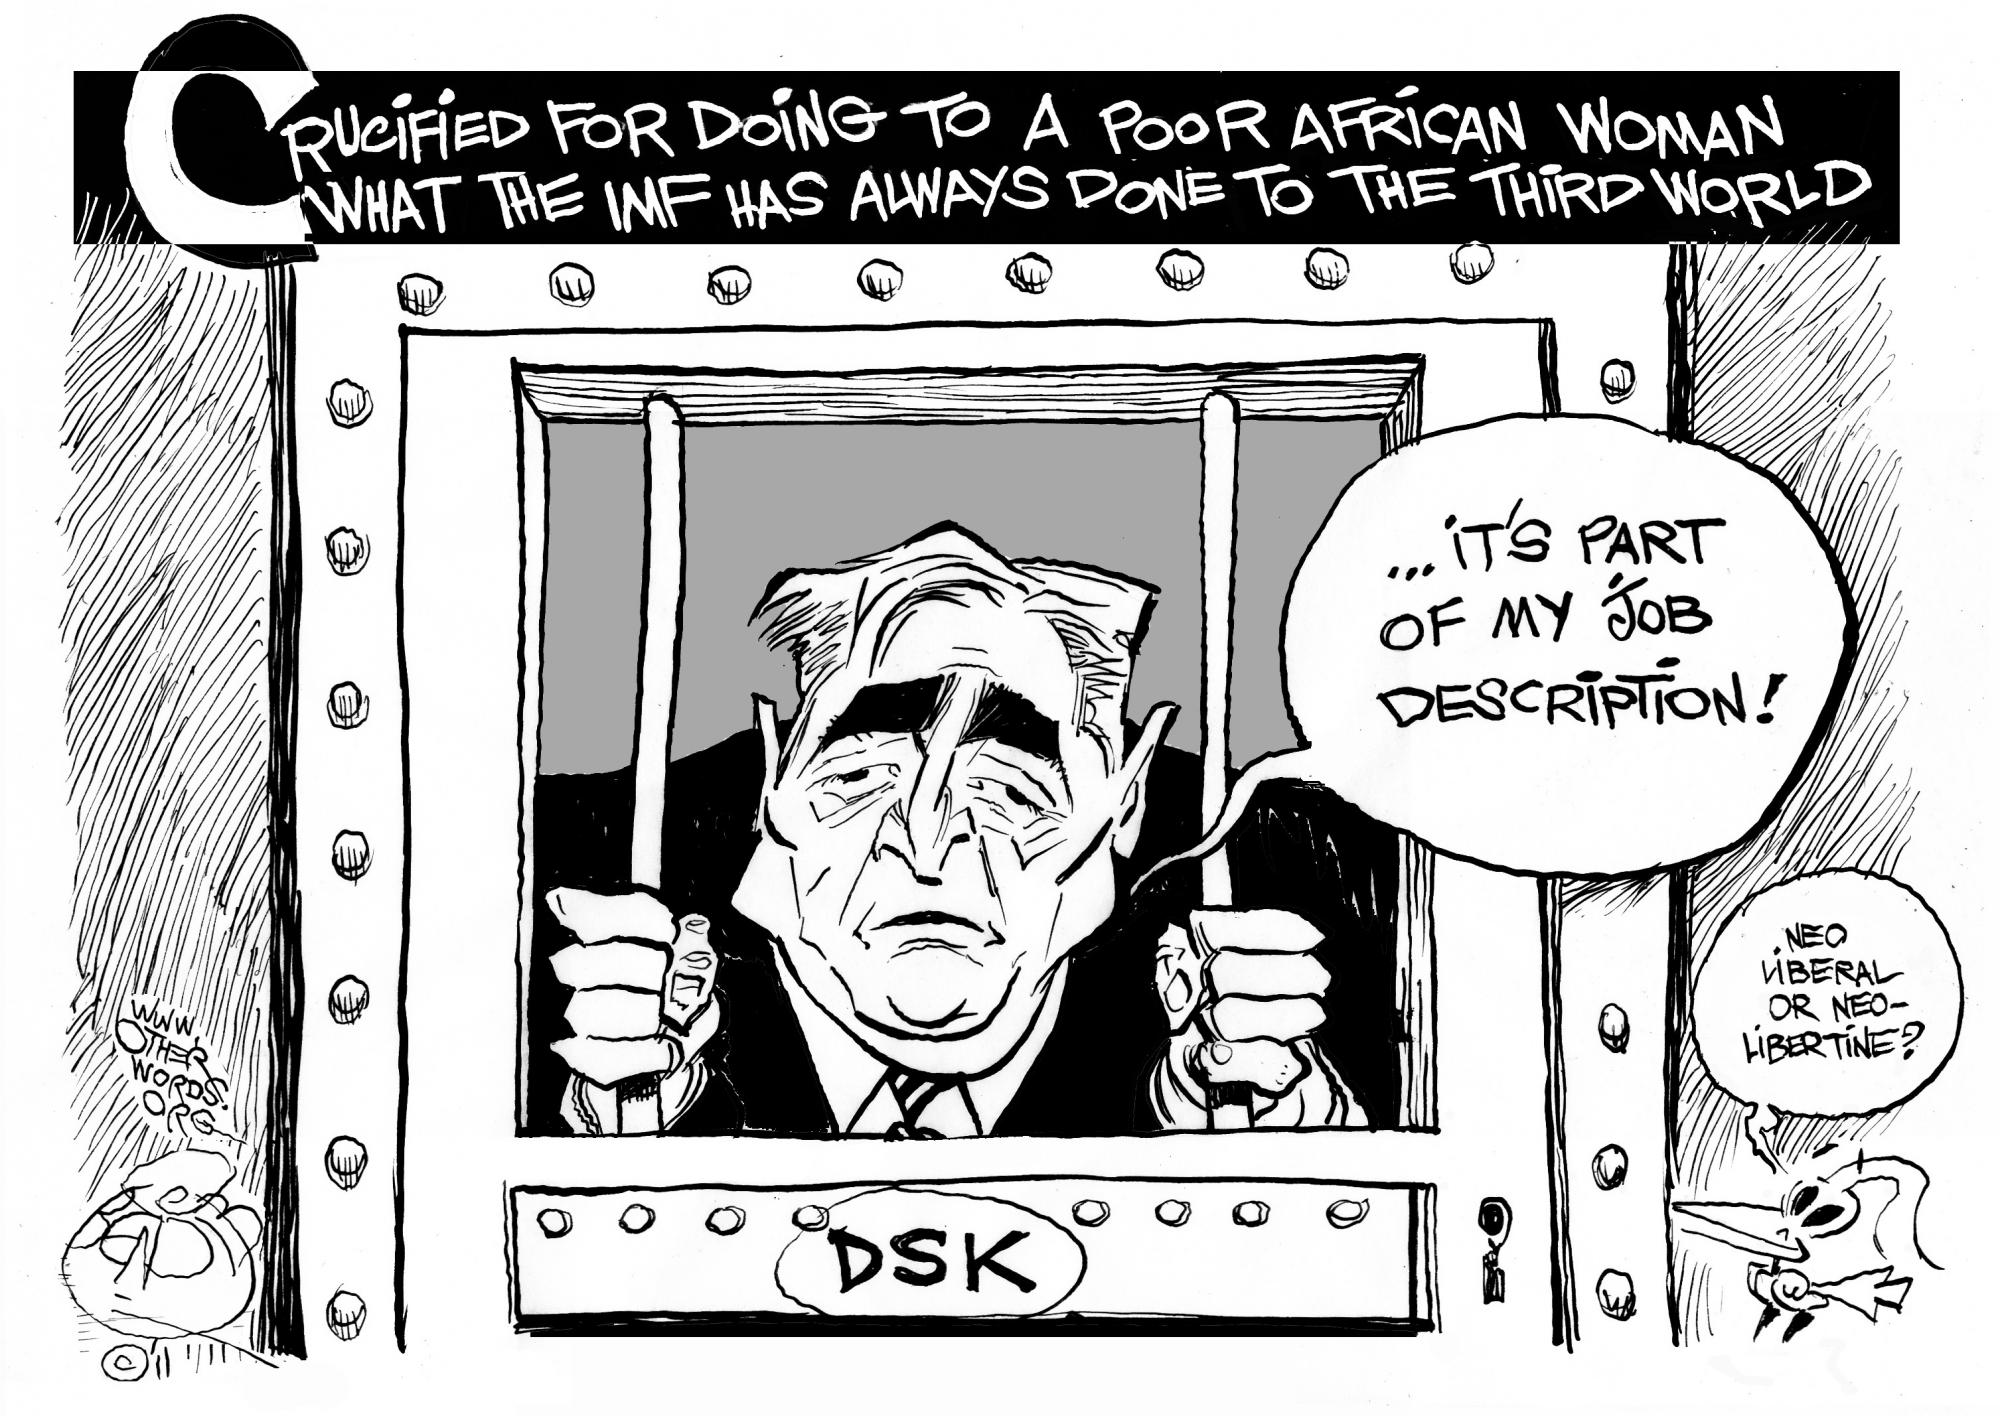 DSK’s Defense